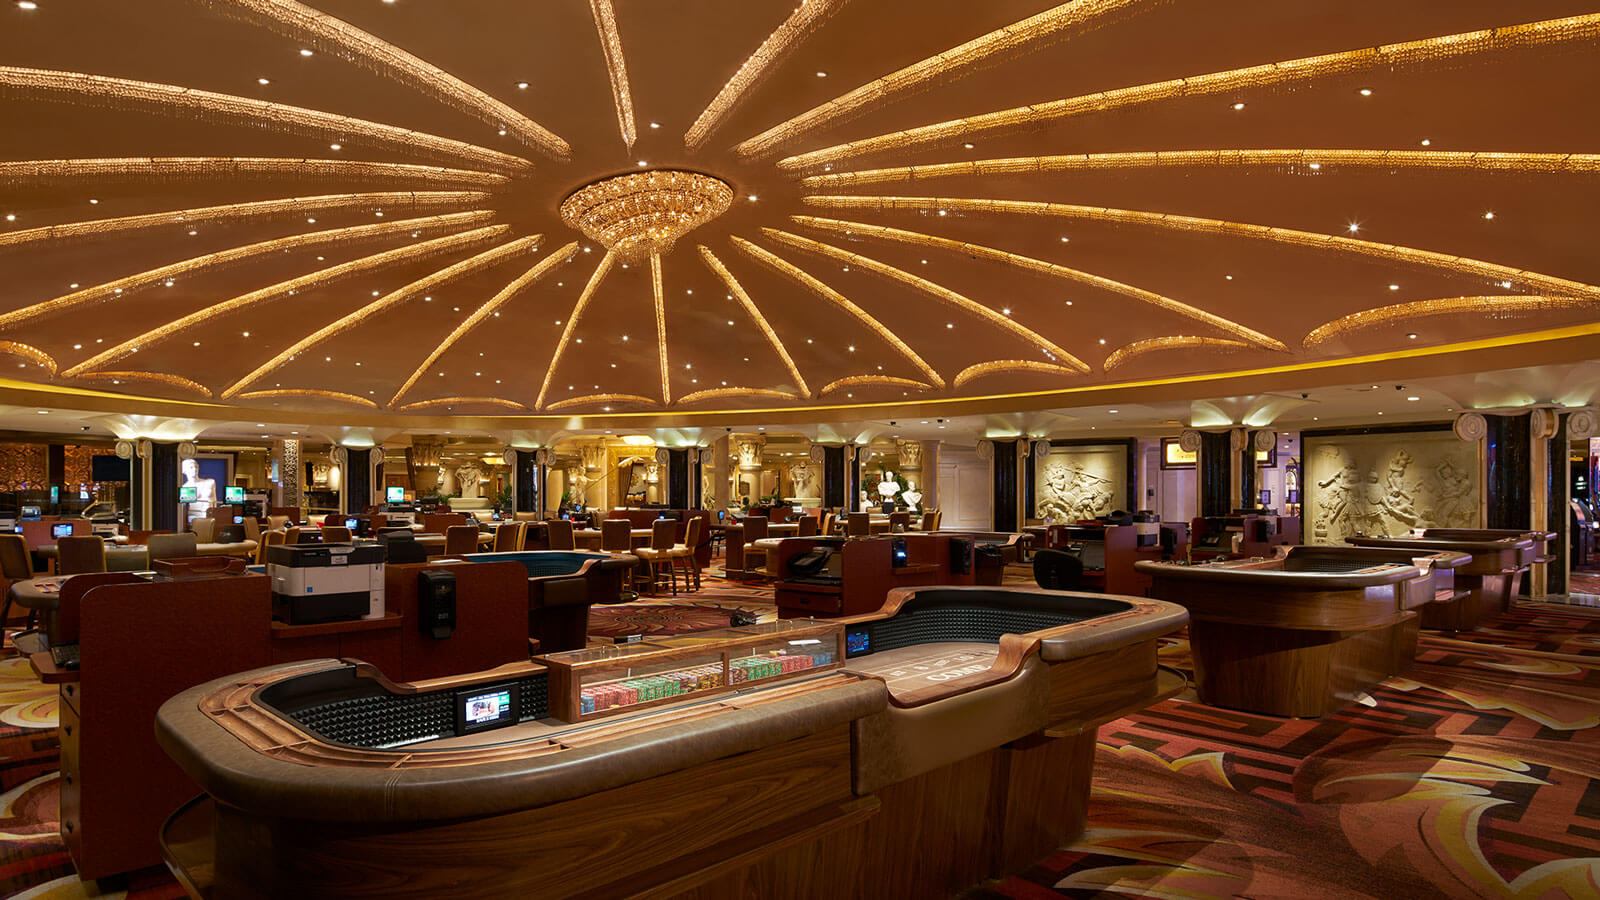 LasVegas-casino-interior  Vegas casino, Casino, Las vegas